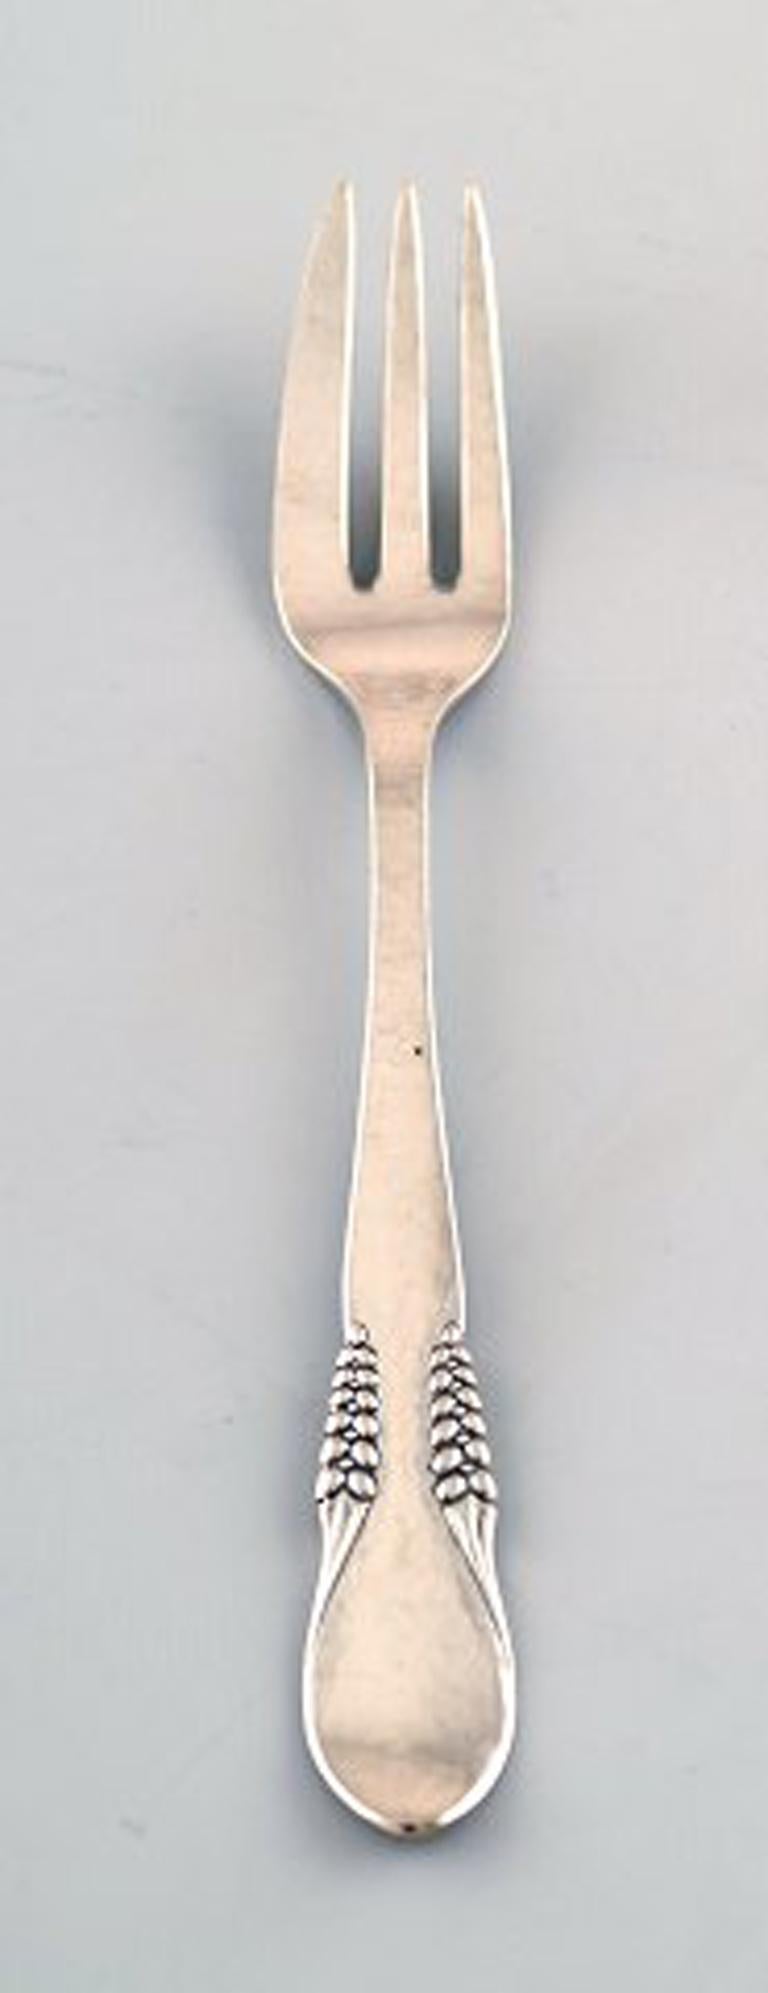 Argent danois (0,830), sept fourchettes à gâteau.
Estampillé : CFH : Christian Fr. Heise. 1910-1920s.
En très bon état.
Mesure 14,5 cm.